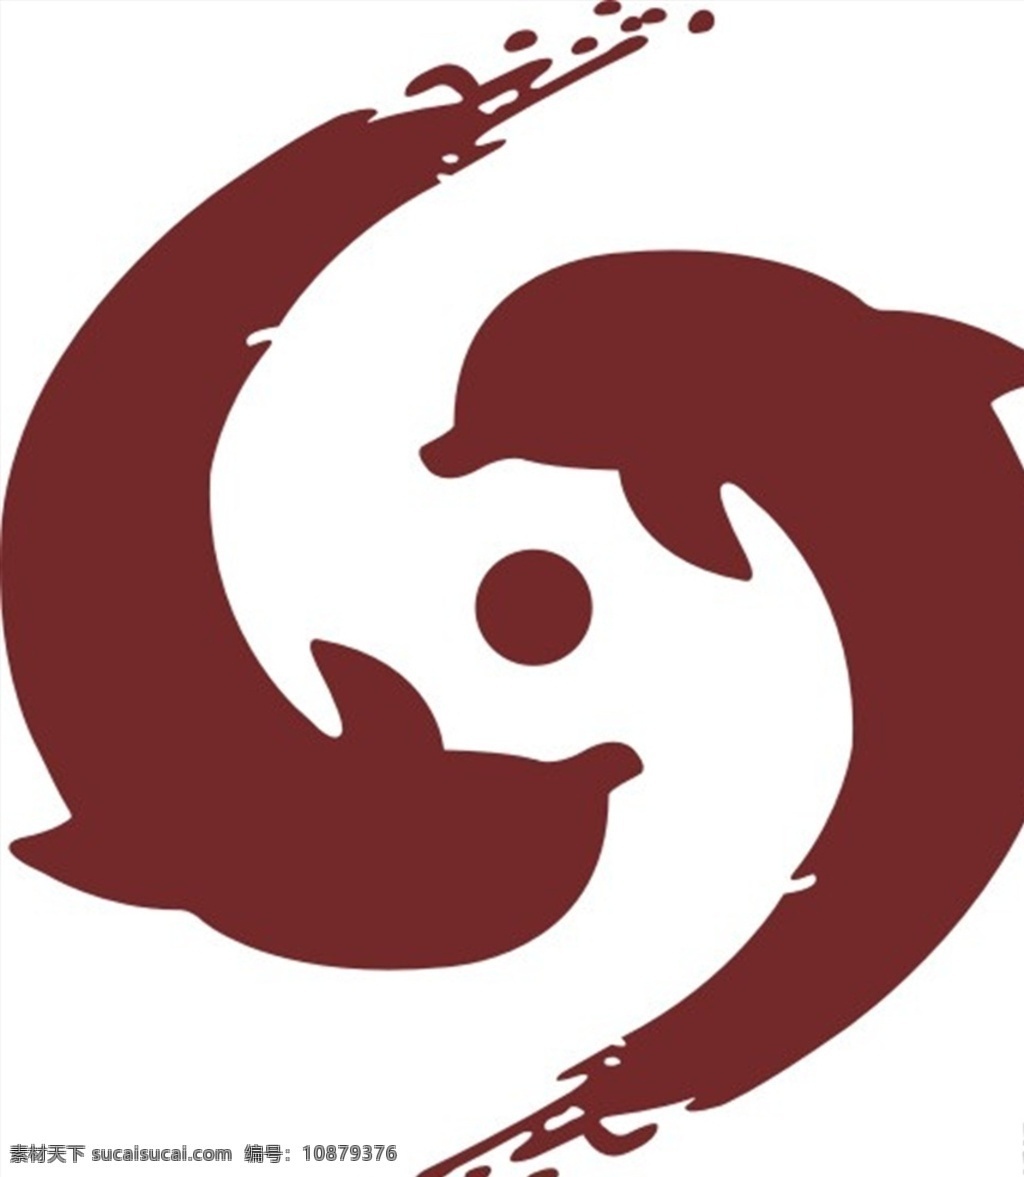 海豚 图标 logo 标志设计 图案 海豚图标 海豚logo 海豚标志 标志剪影 圆形海豚 文化艺术